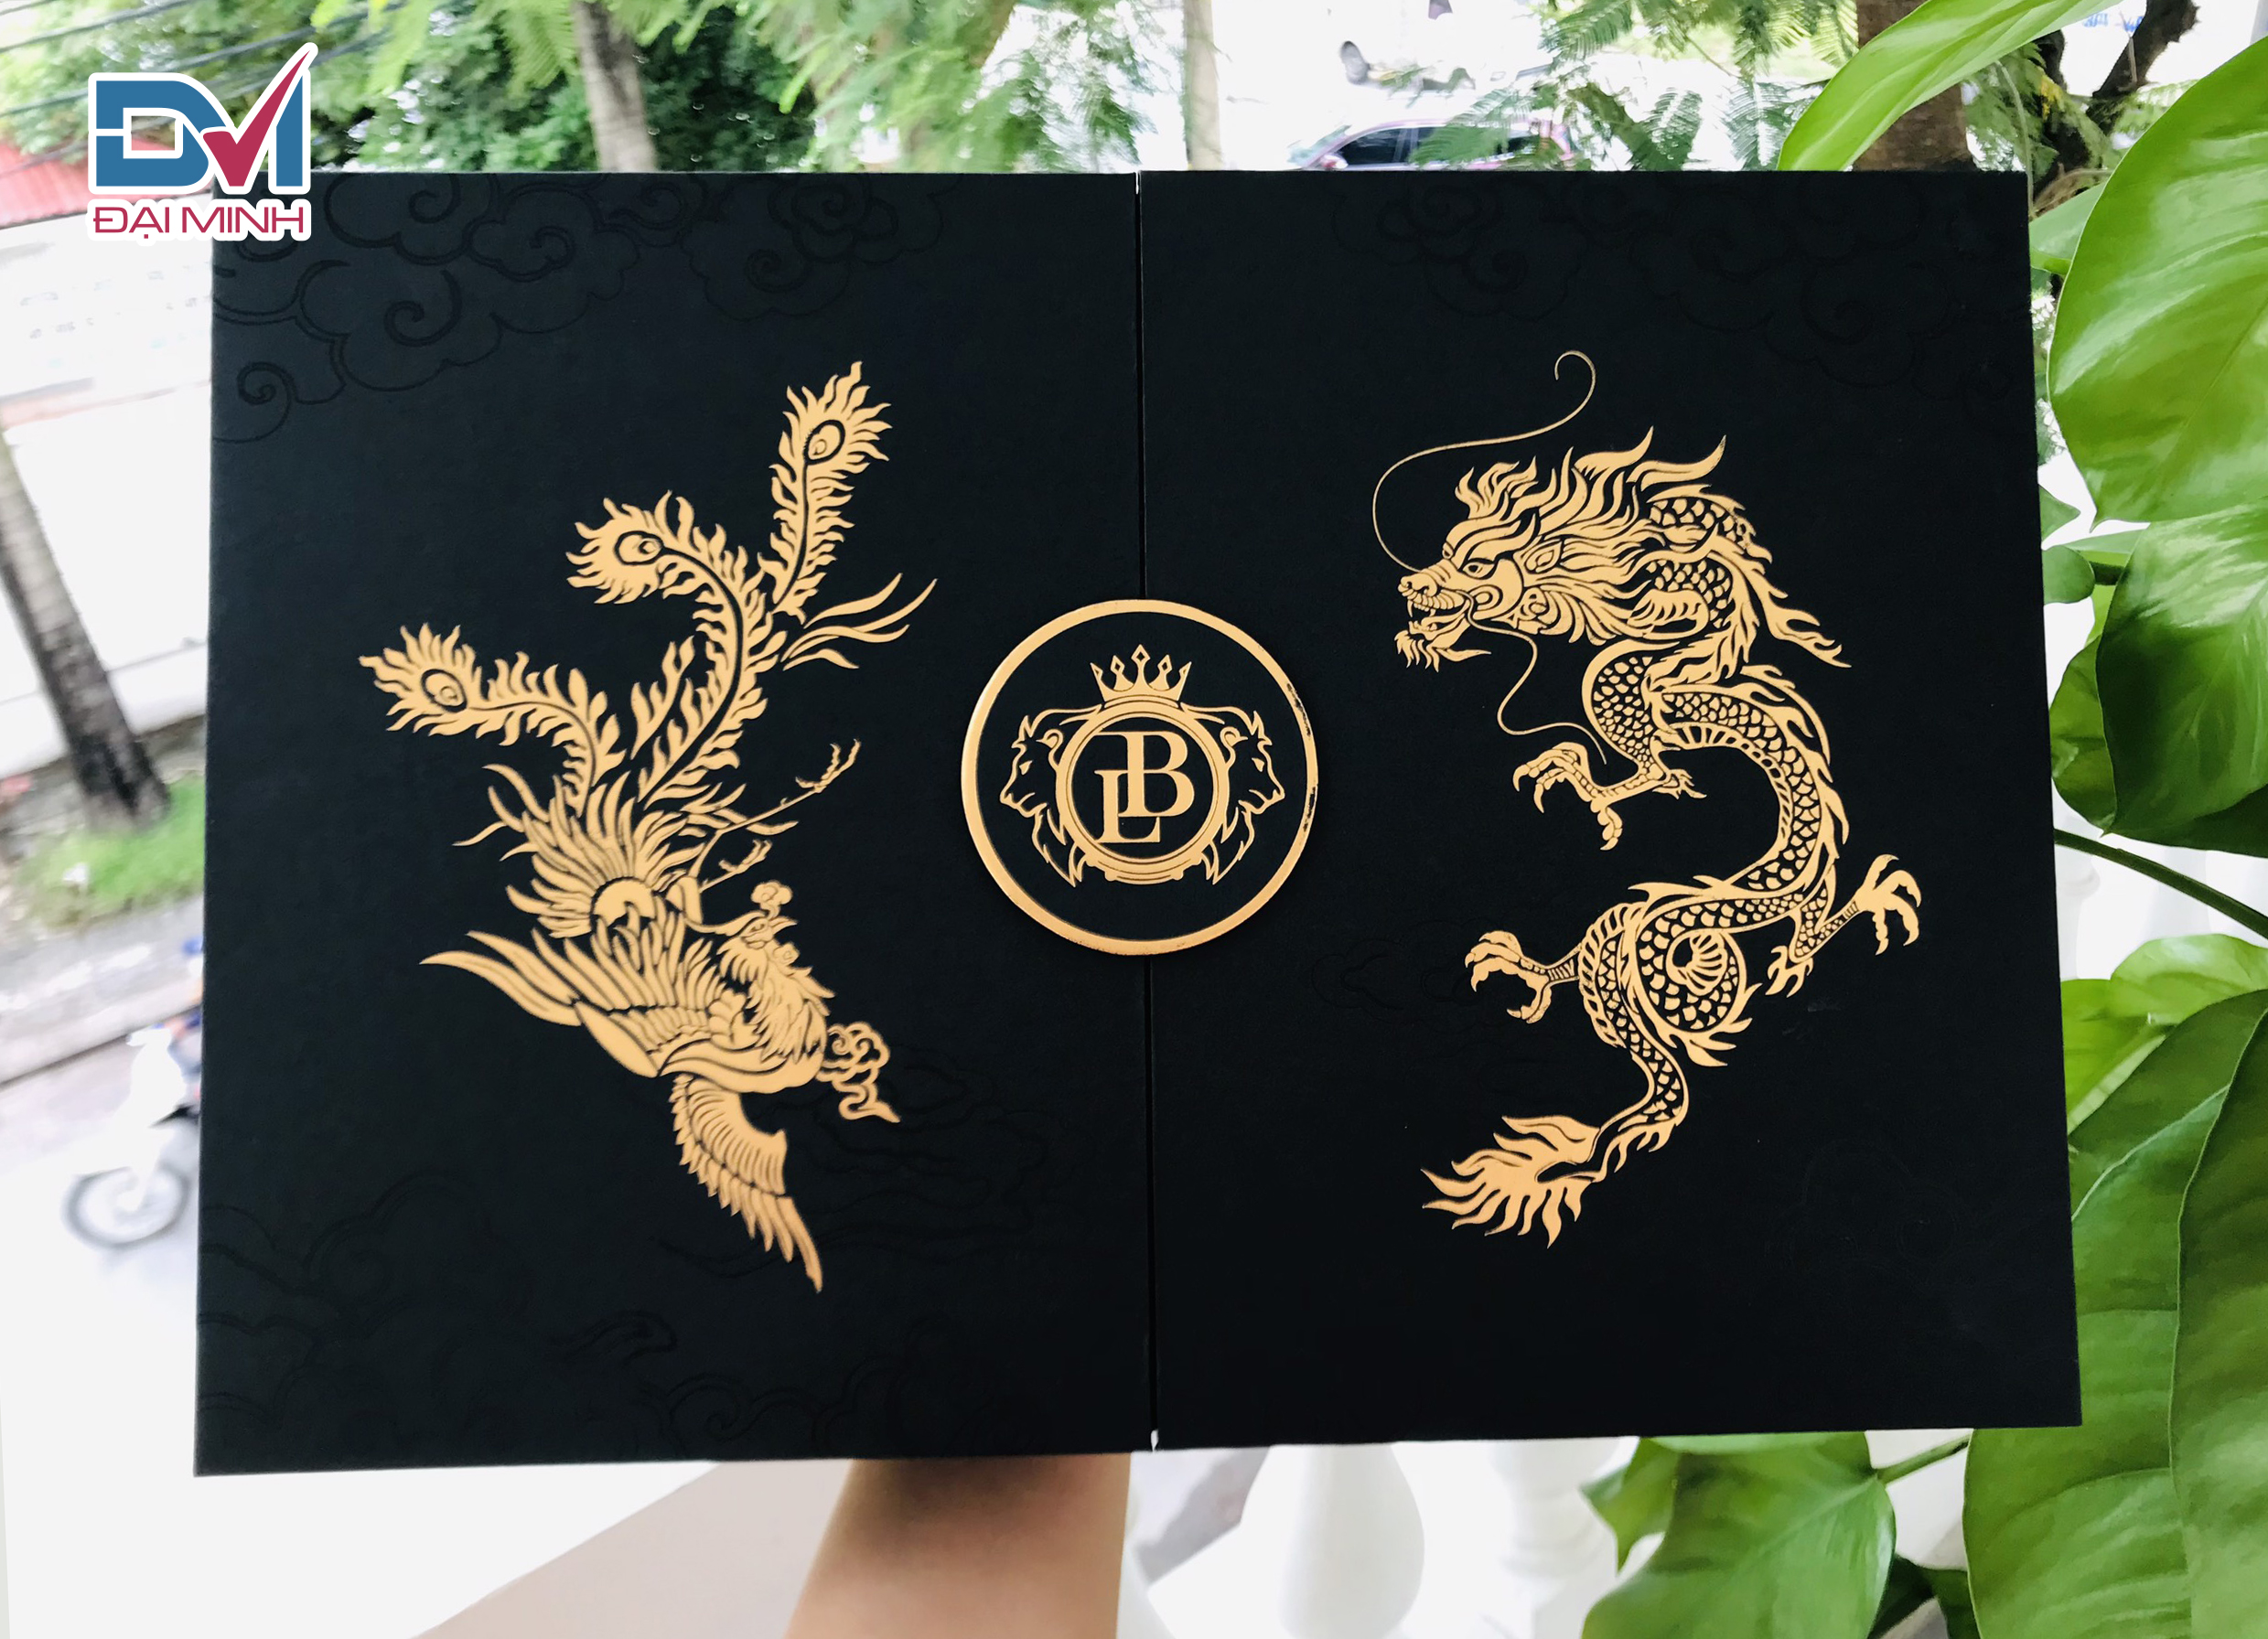 Hộp cứng Boss Luxury - Thiết kế và in ấn In Đại Minh